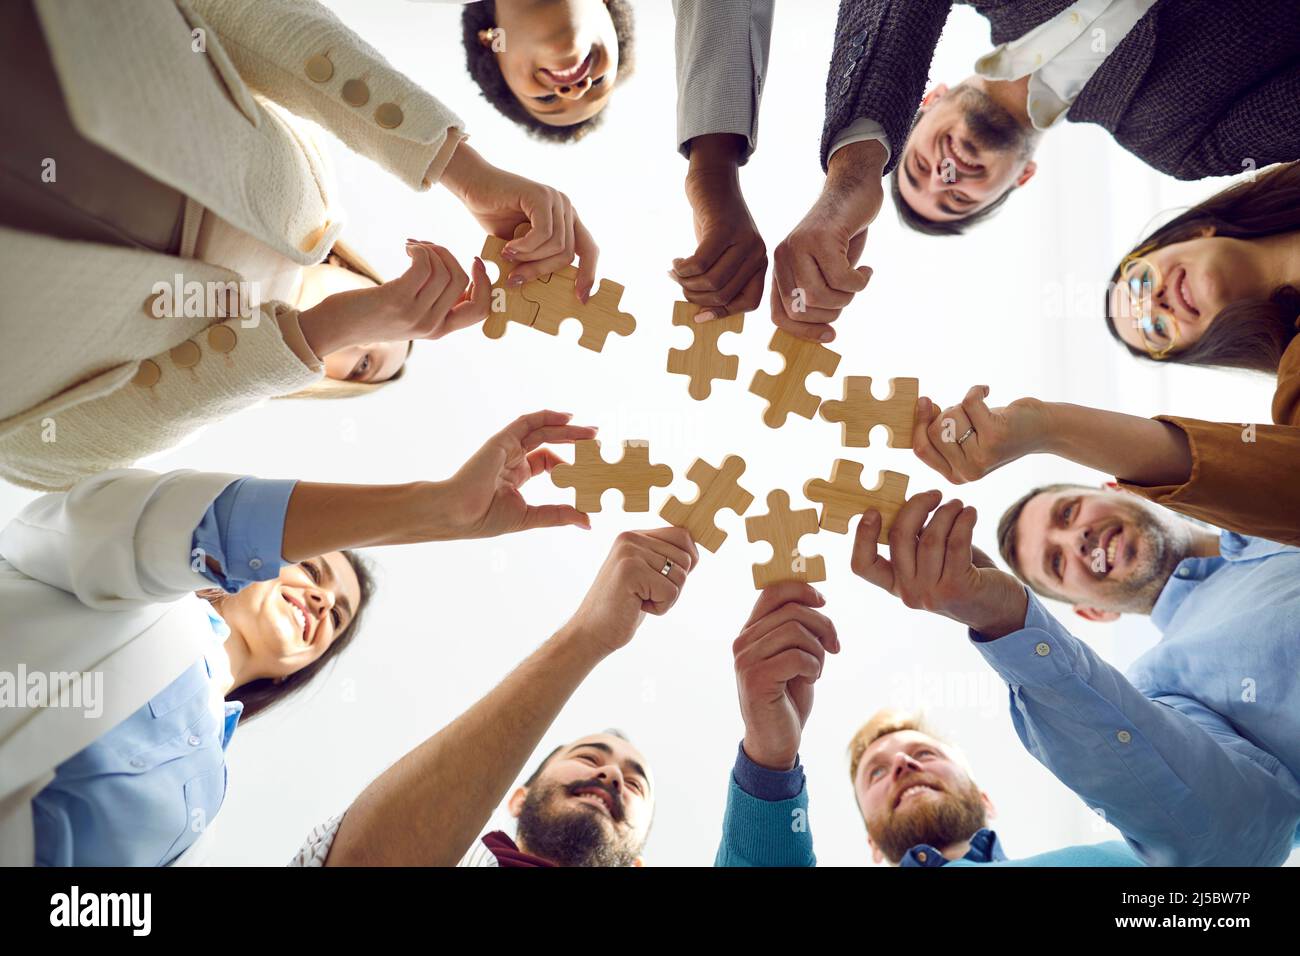 Glückliche verschiedene Menschen stellen Holzpuzzles zusammen, die Teamwork symbolisieren. Stockfoto